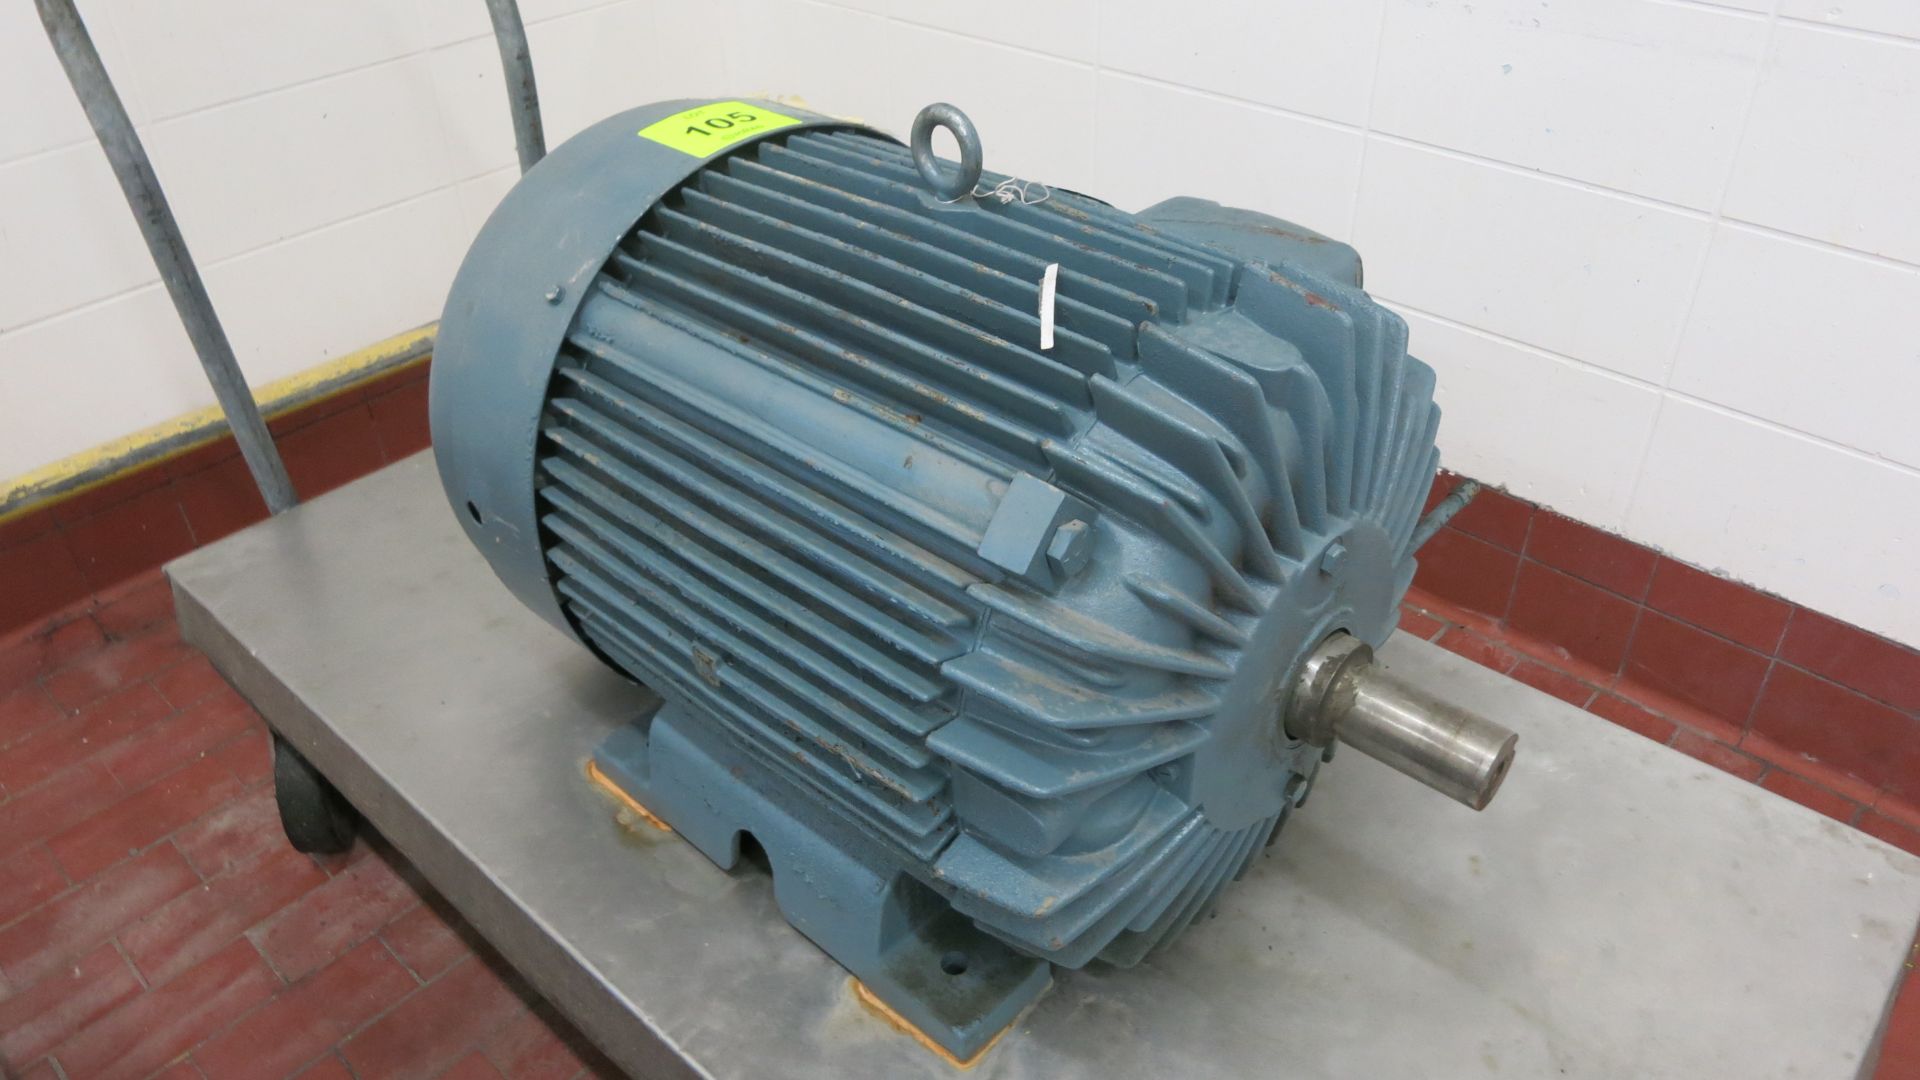 Pacemaker motor, model 2NE82S-002, 75 hp, 480 V, 3 ph, 60 hz, 1775 rpm